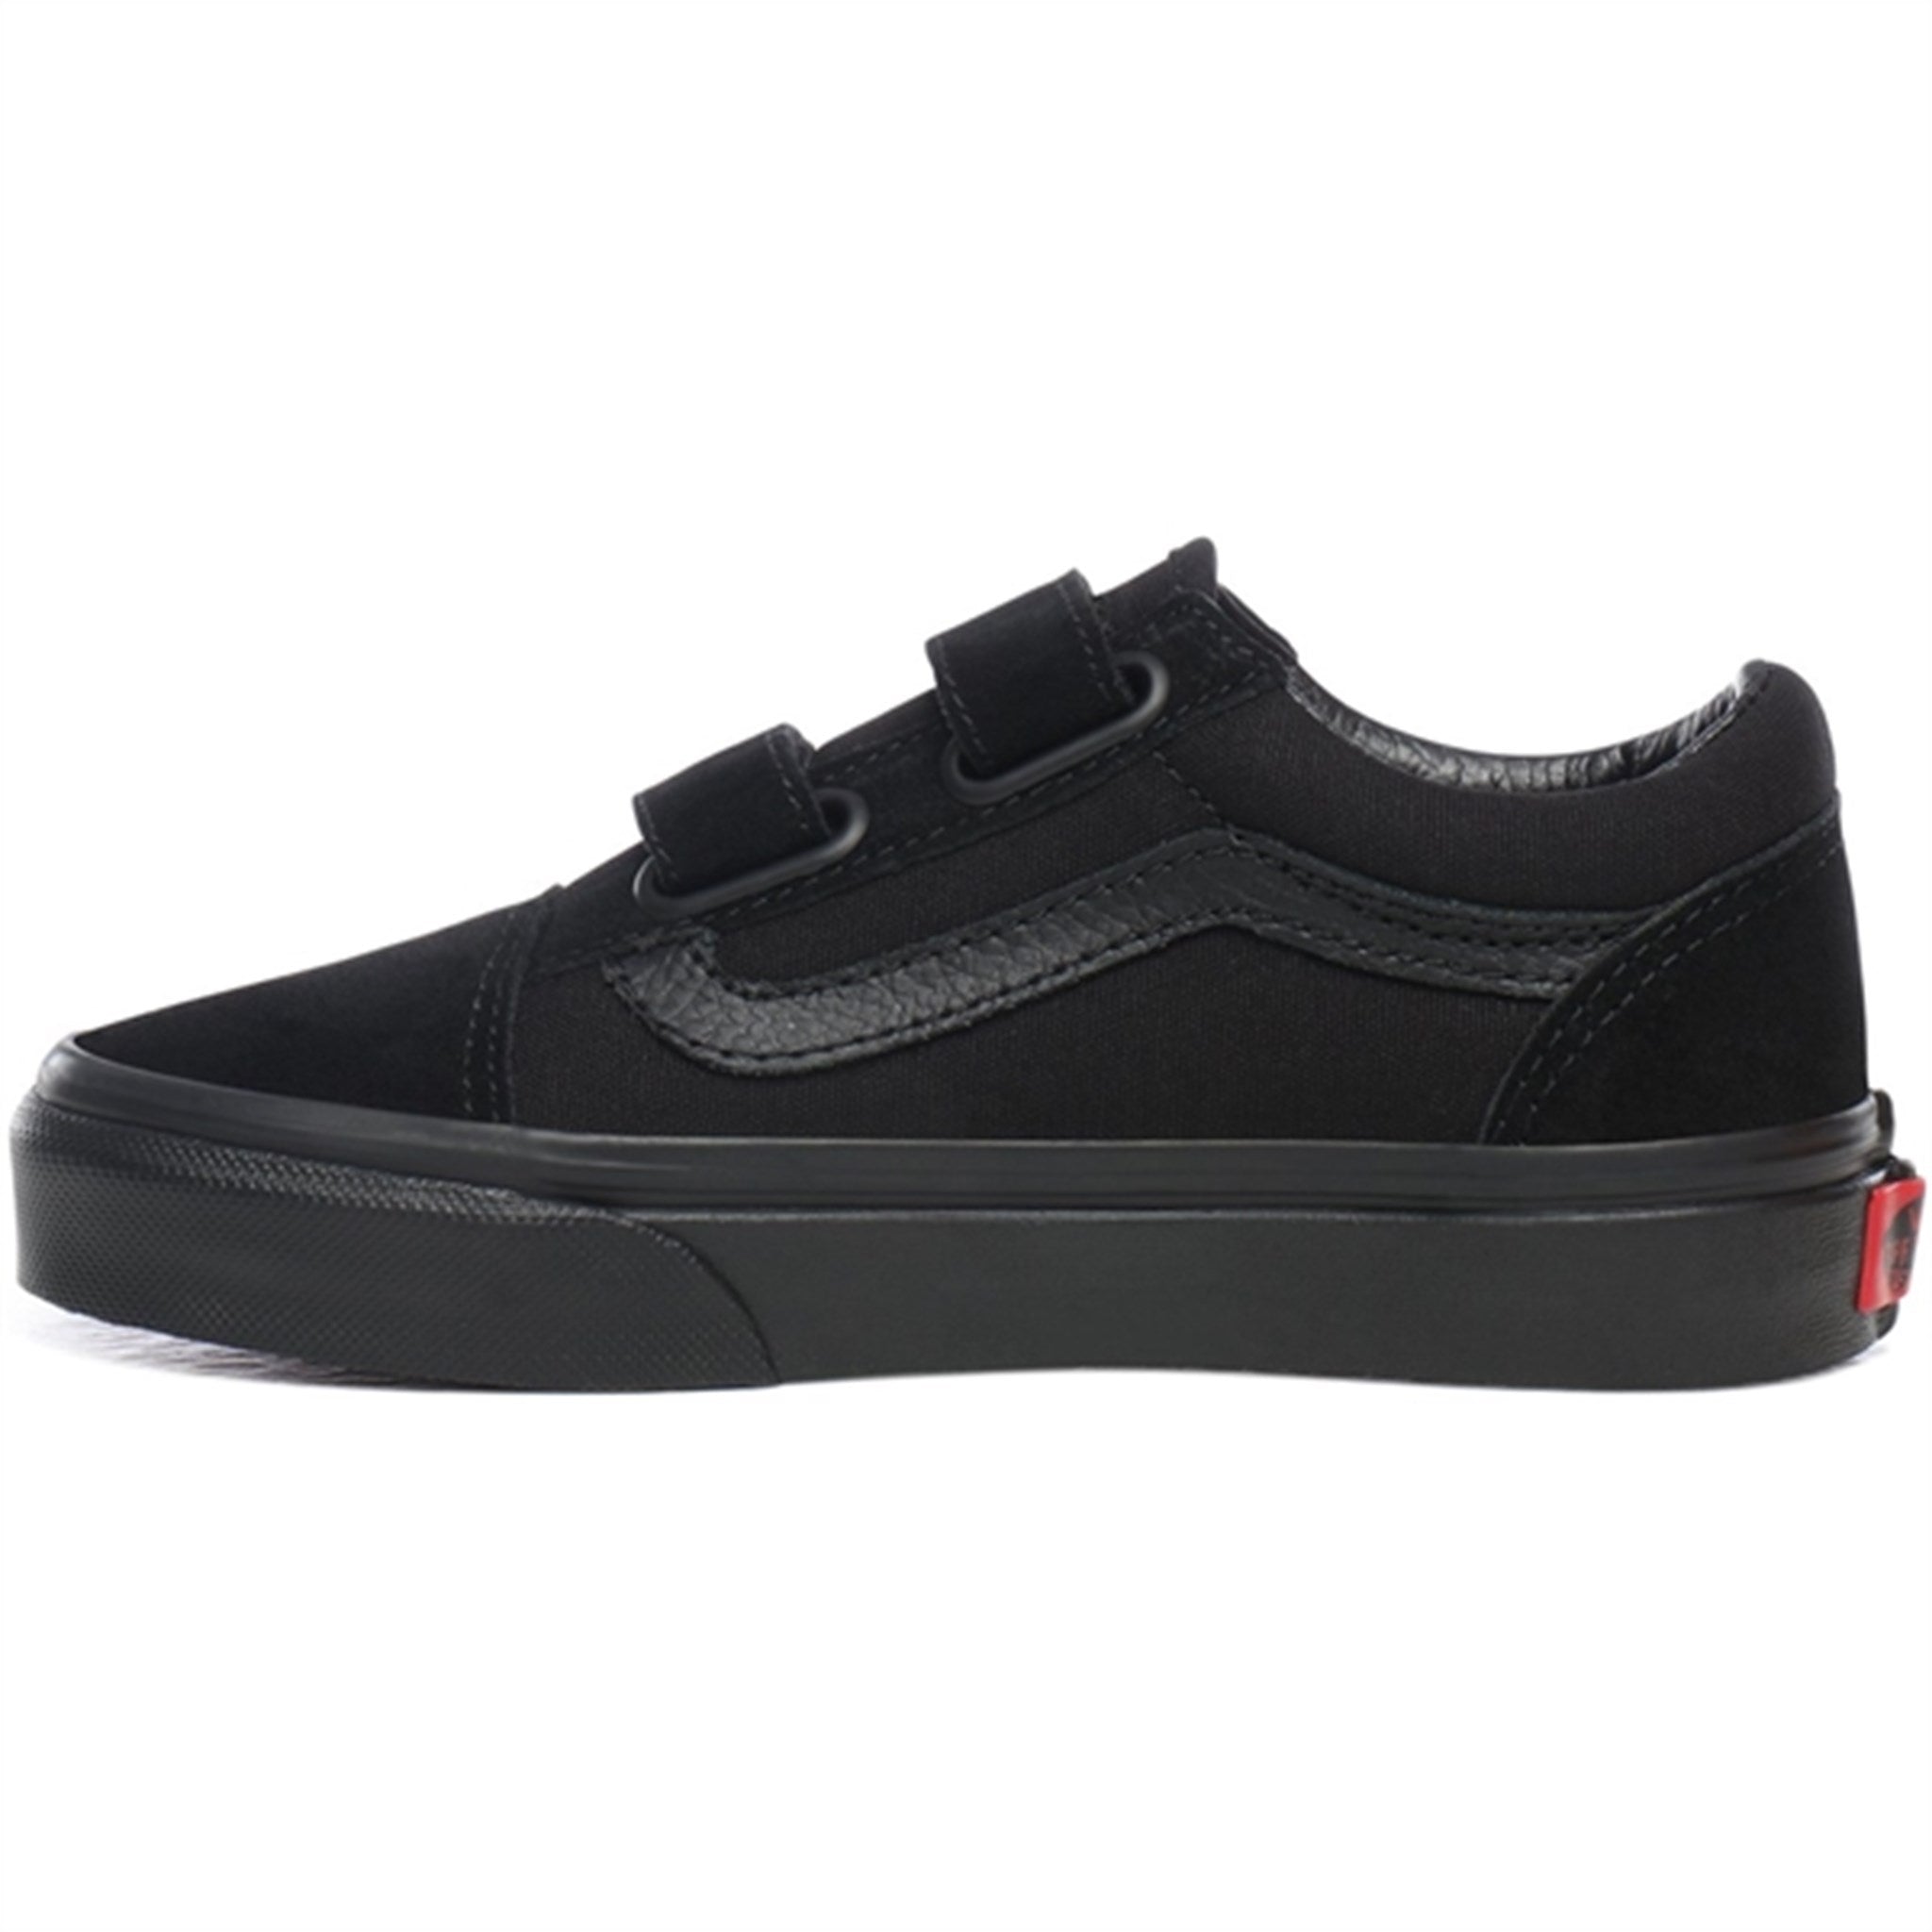 VANS Uy Old Skool V Black/Black Sneakers 5